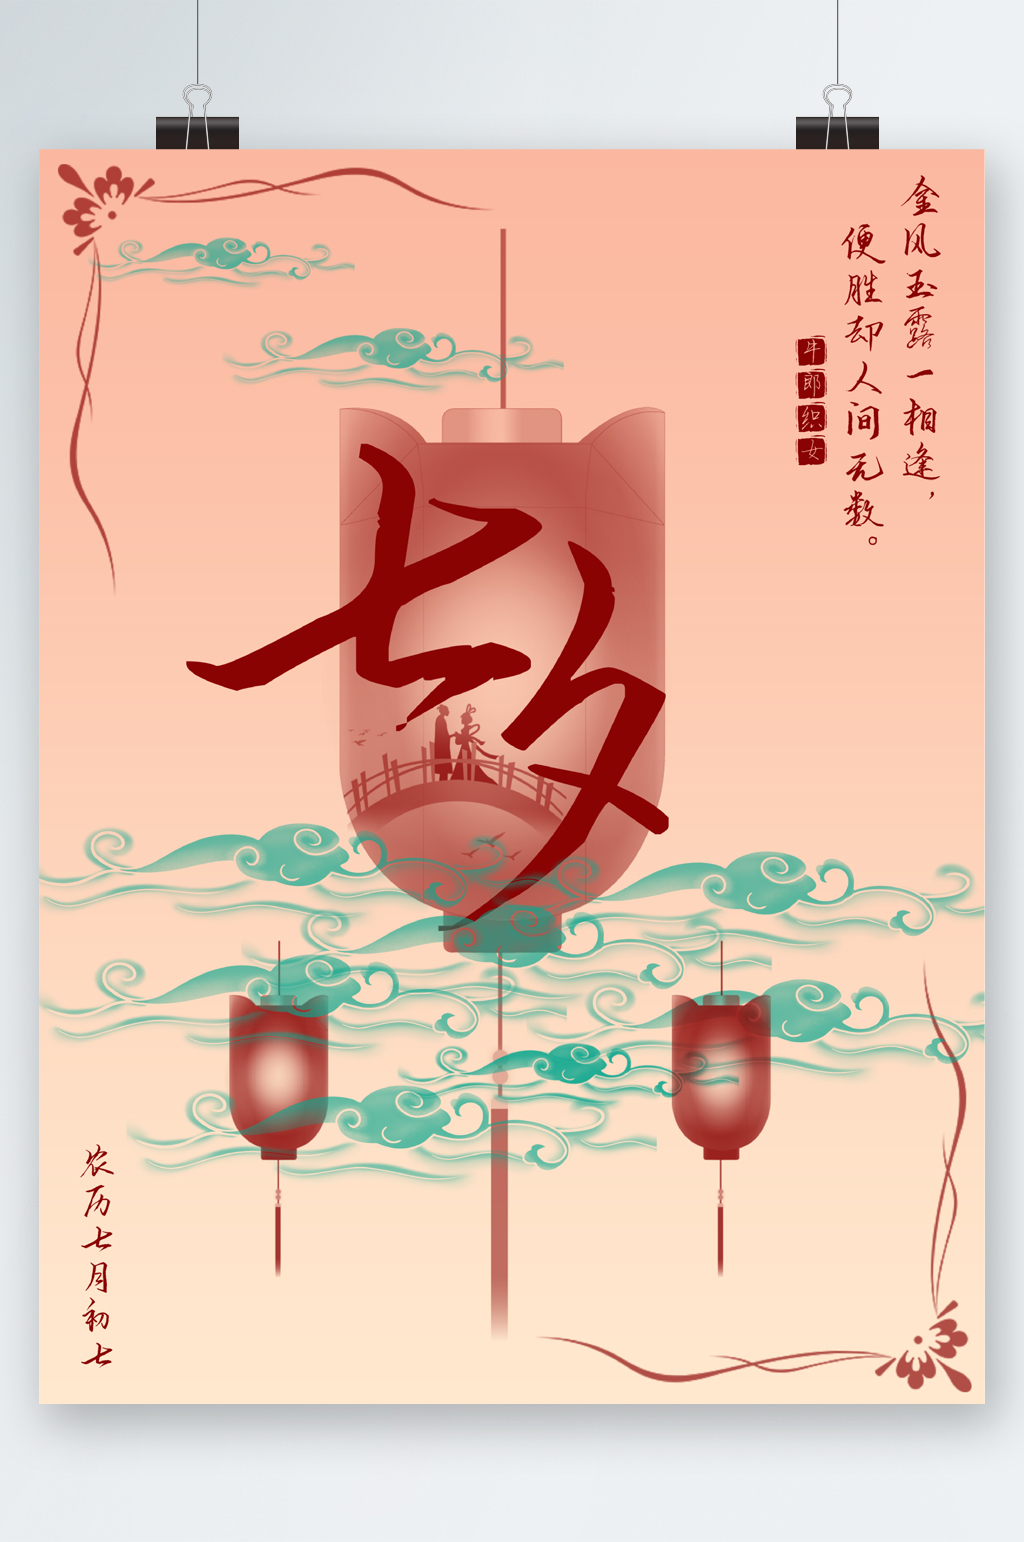 众图网独家提供中式古典风七夕节海报素材免费下载,本作品是由图图